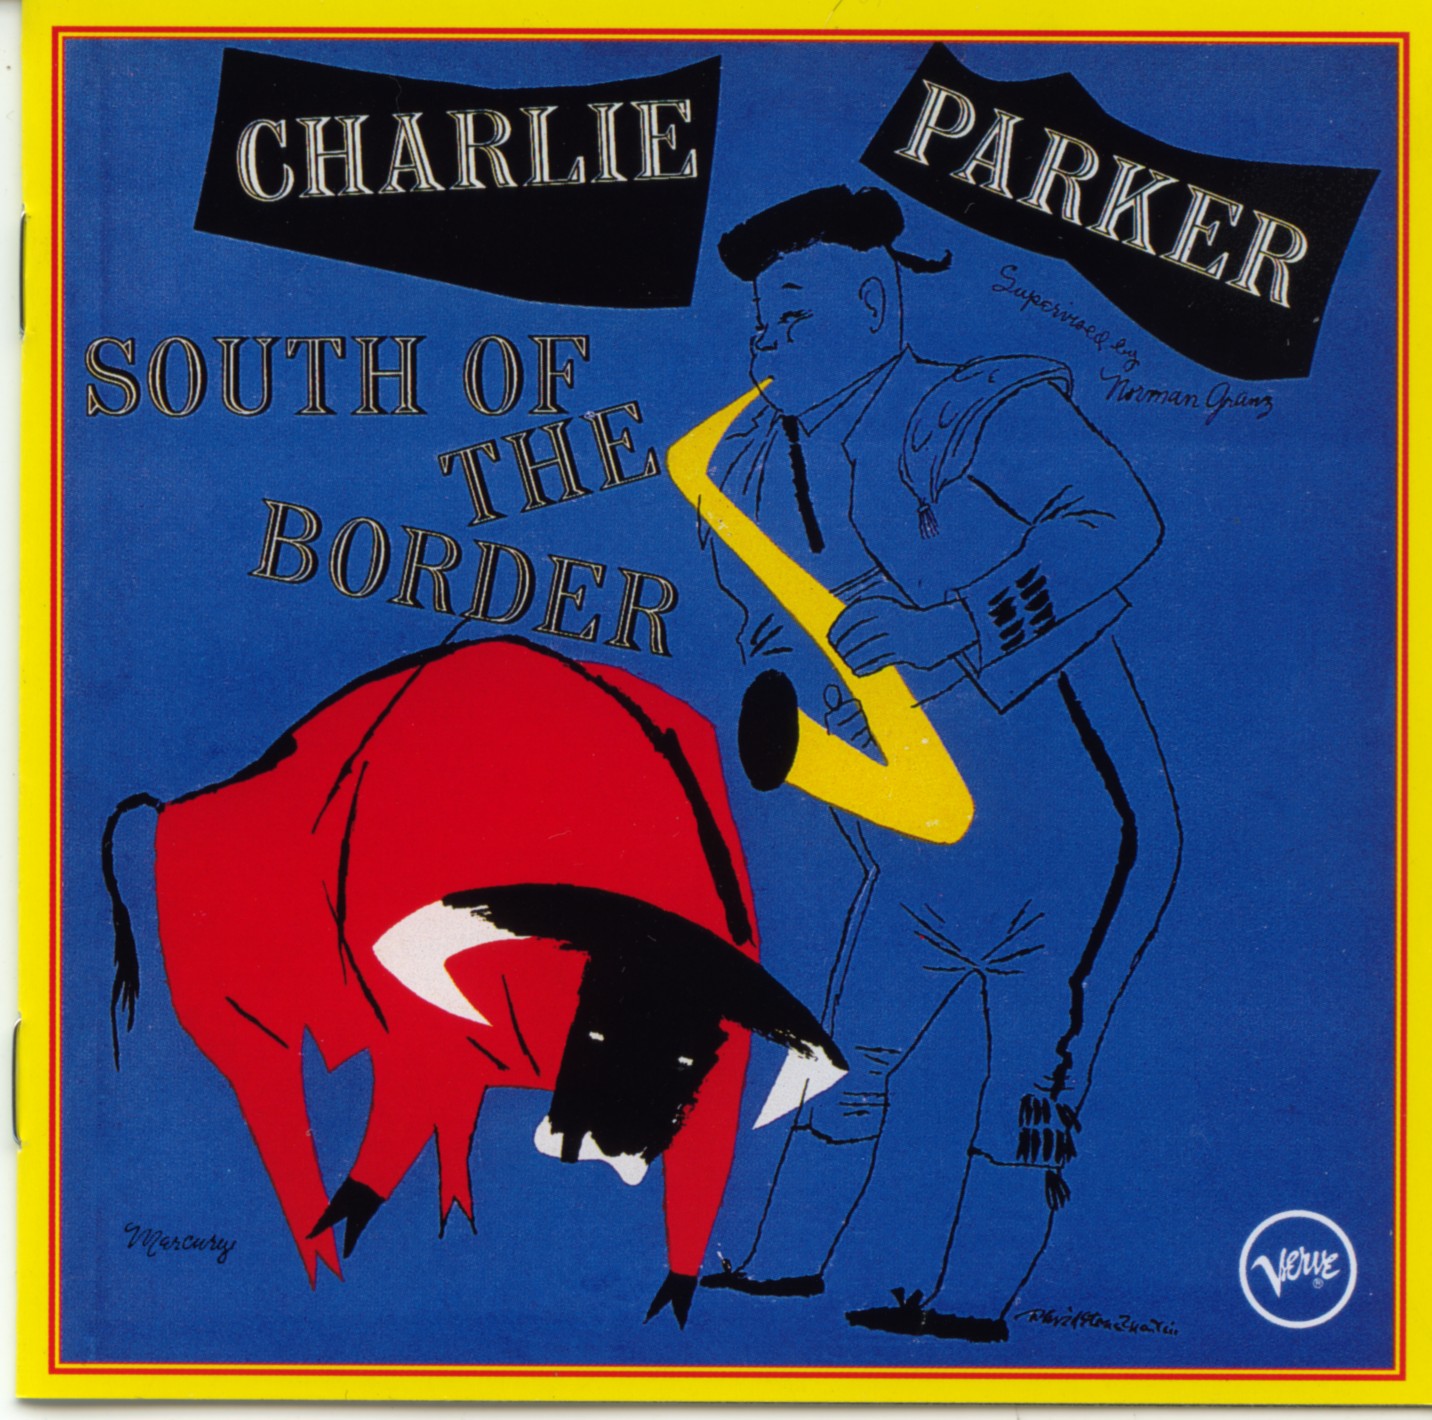 charlie parker discography torrent